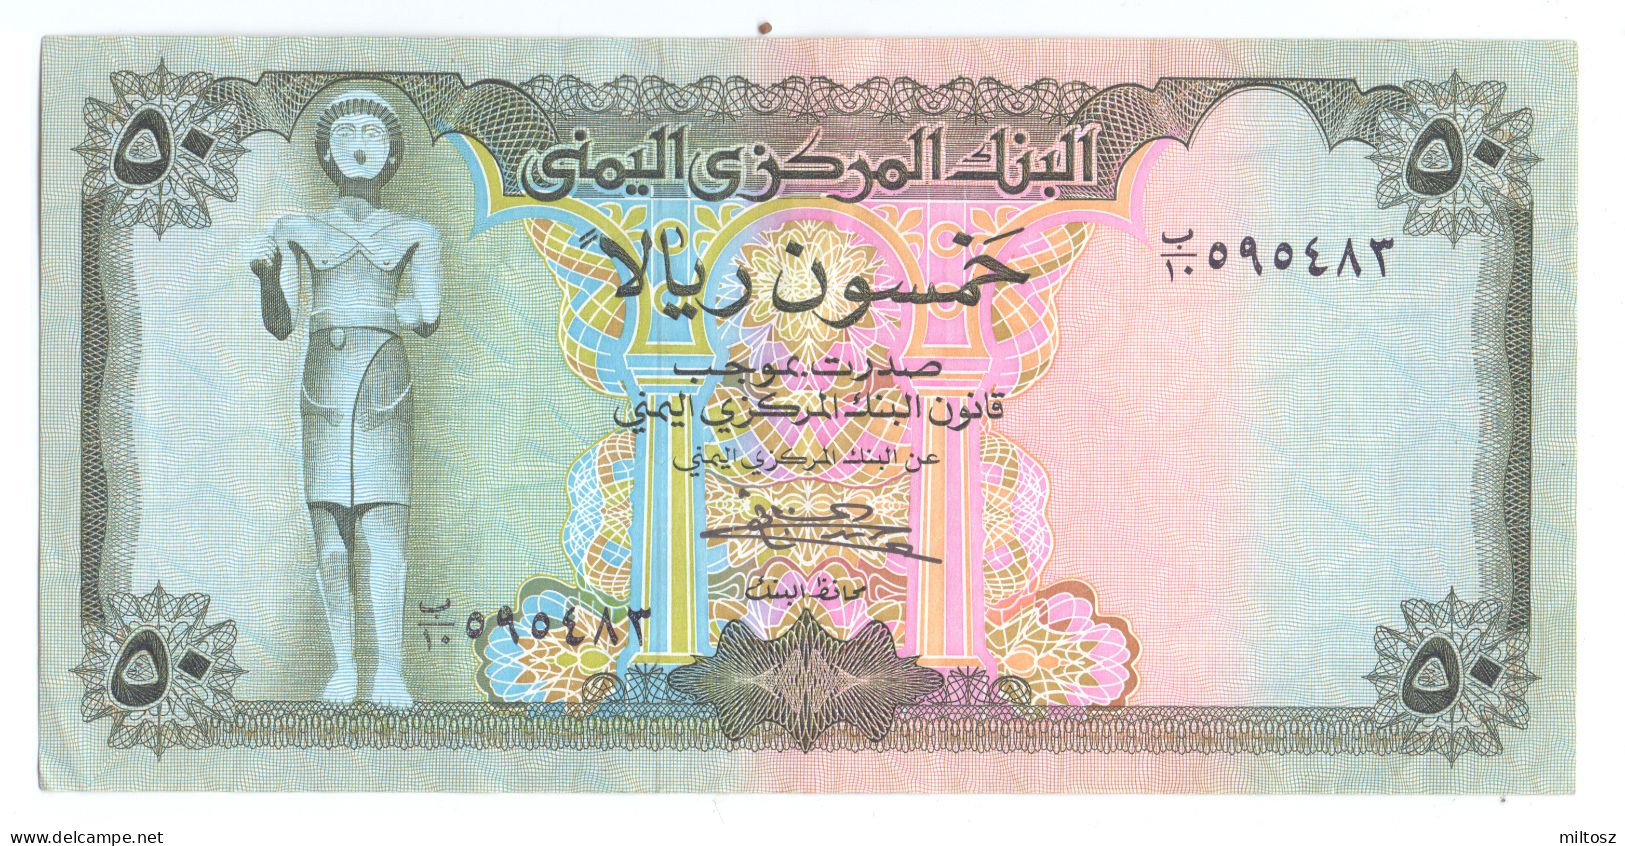 Yemen 50 Rials 1973 (signature 7) KM#15 - Yemen